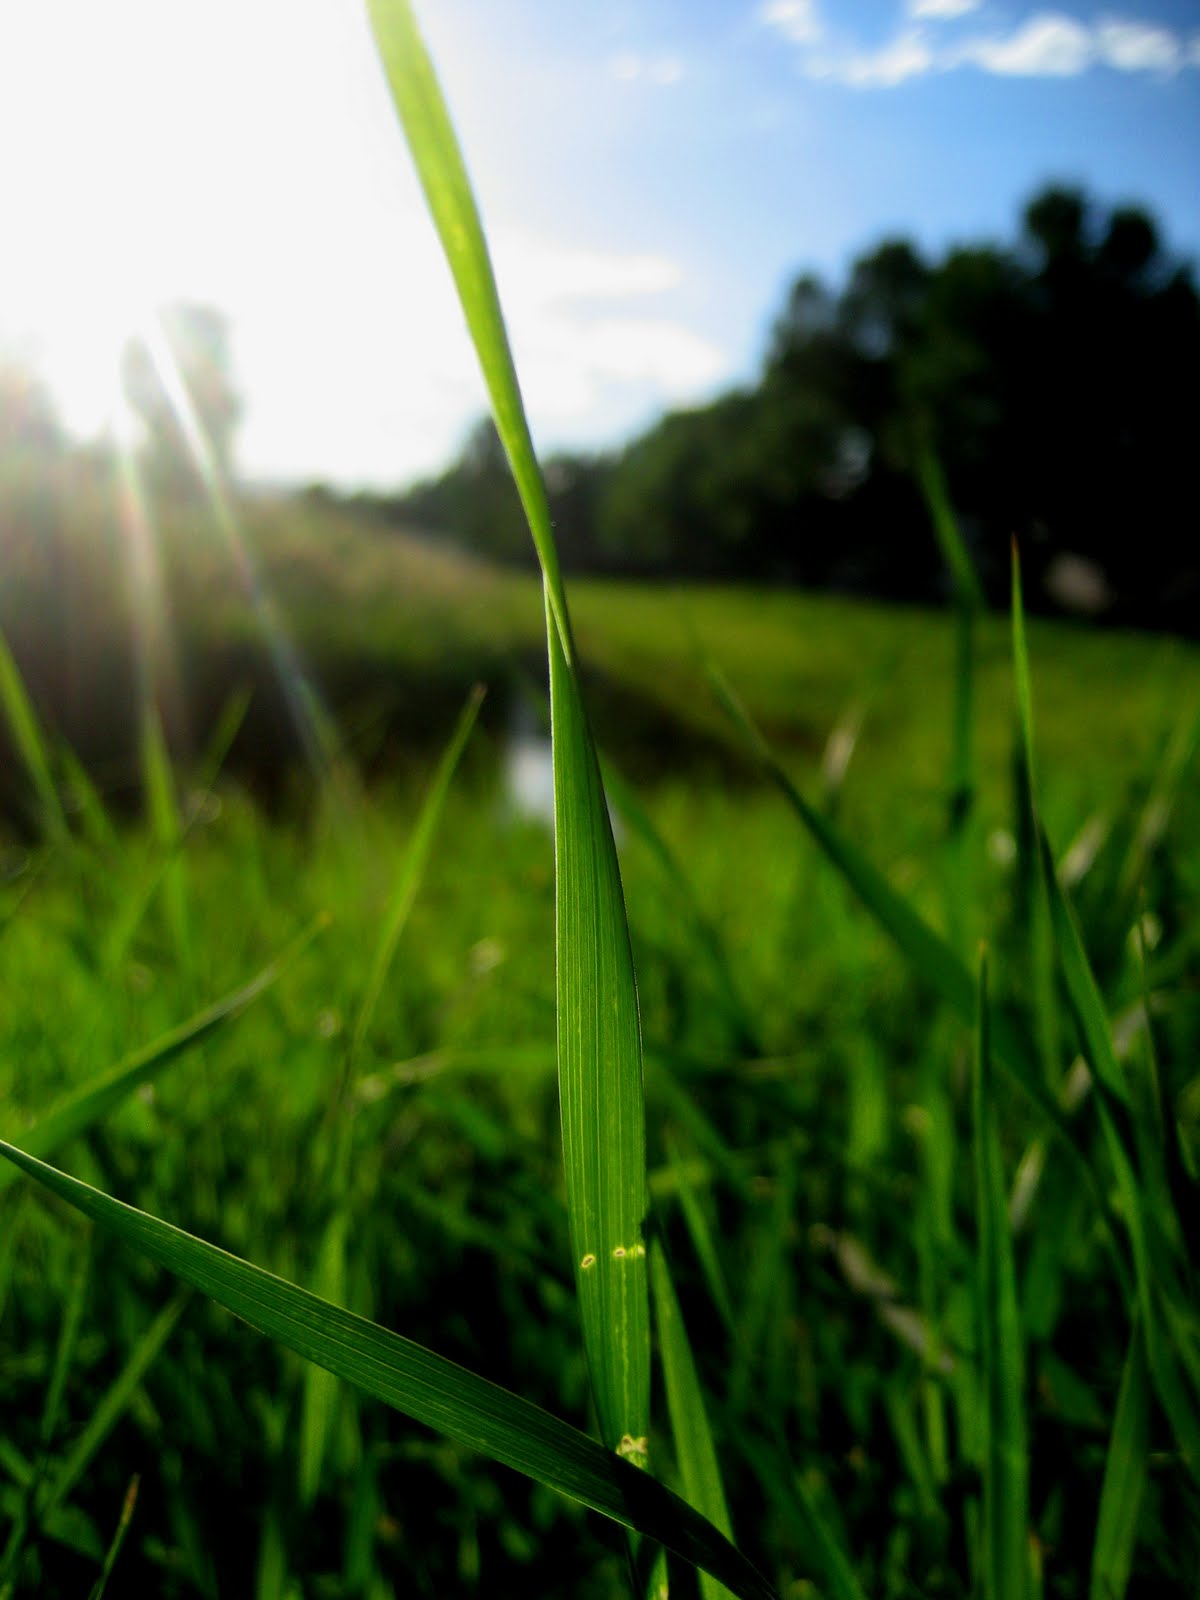 Grass, a Children's Story | adoptingjames